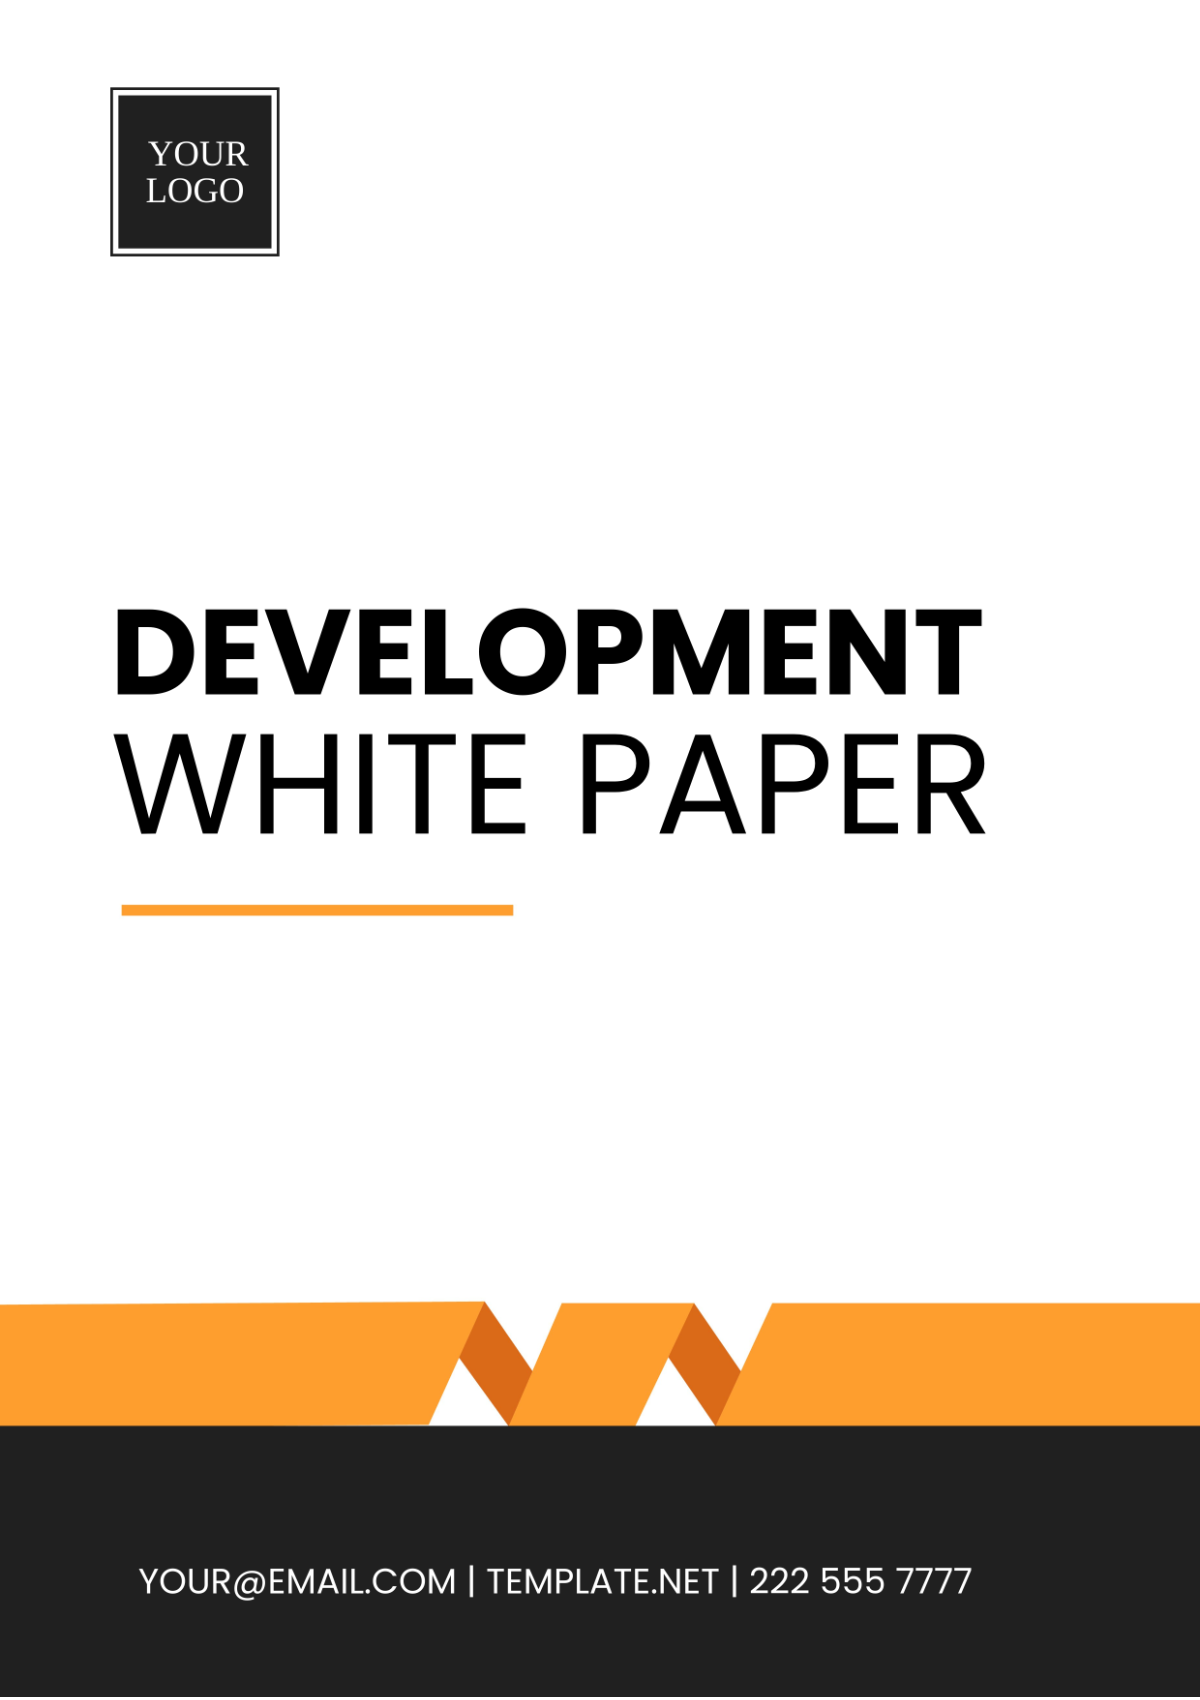 Development White Paper Template